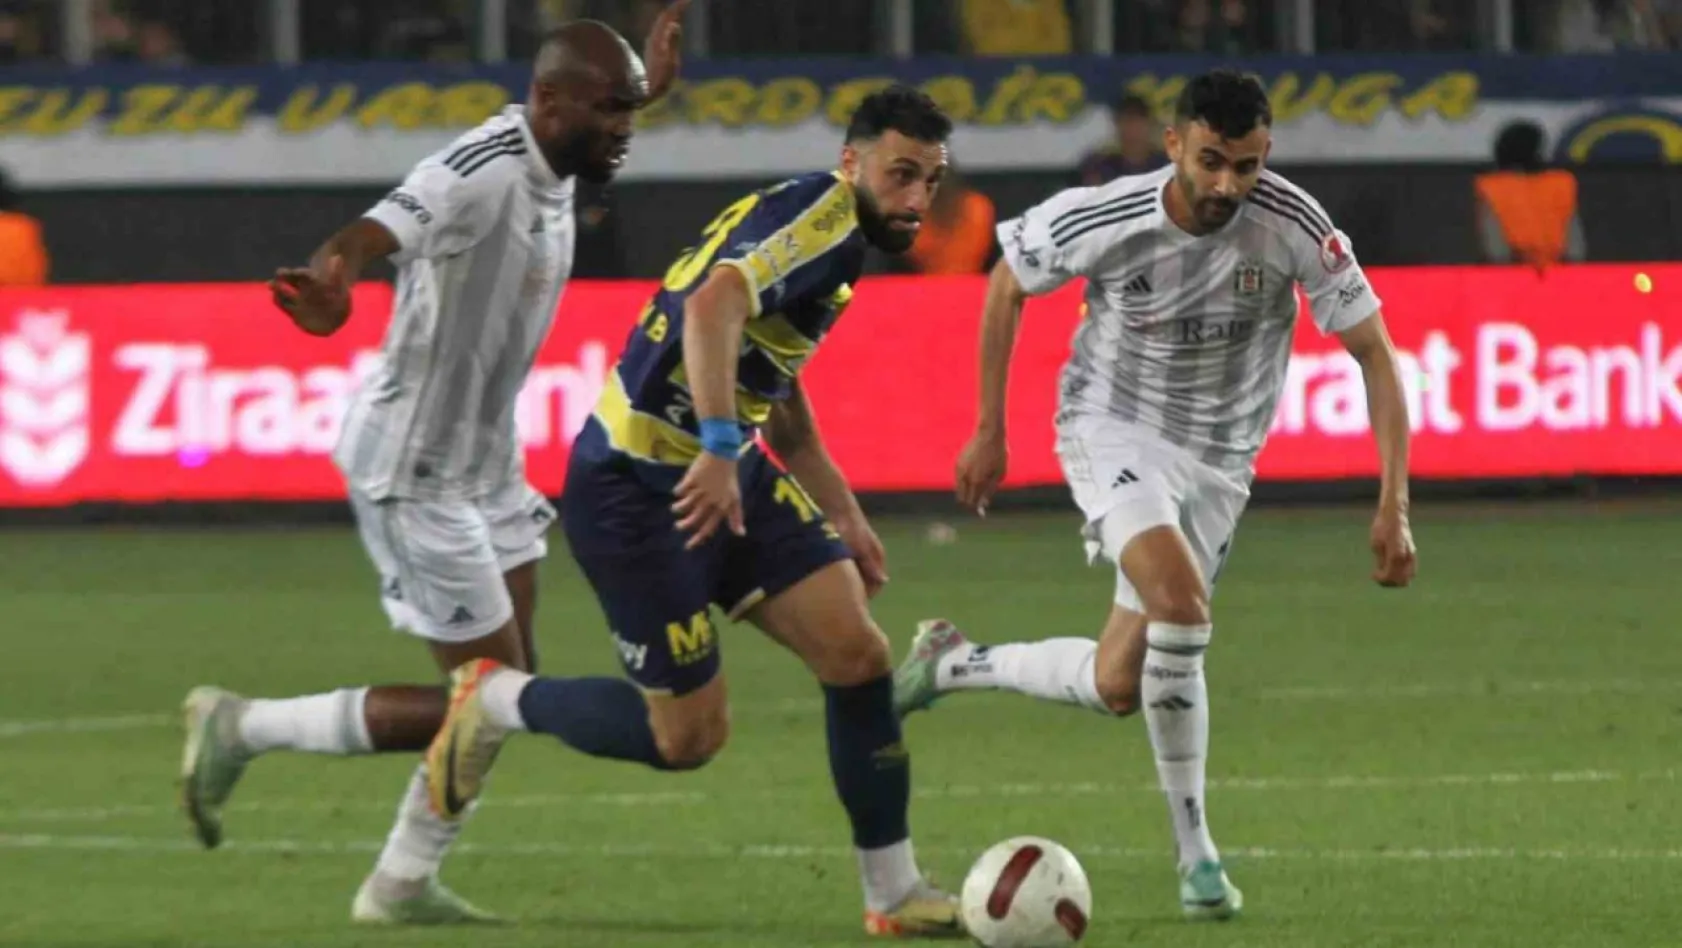 Ziraat Türkiye Kupası: MKE Ankaragücü: 0 - Beşiktaş: 0 (Maç sonucu)